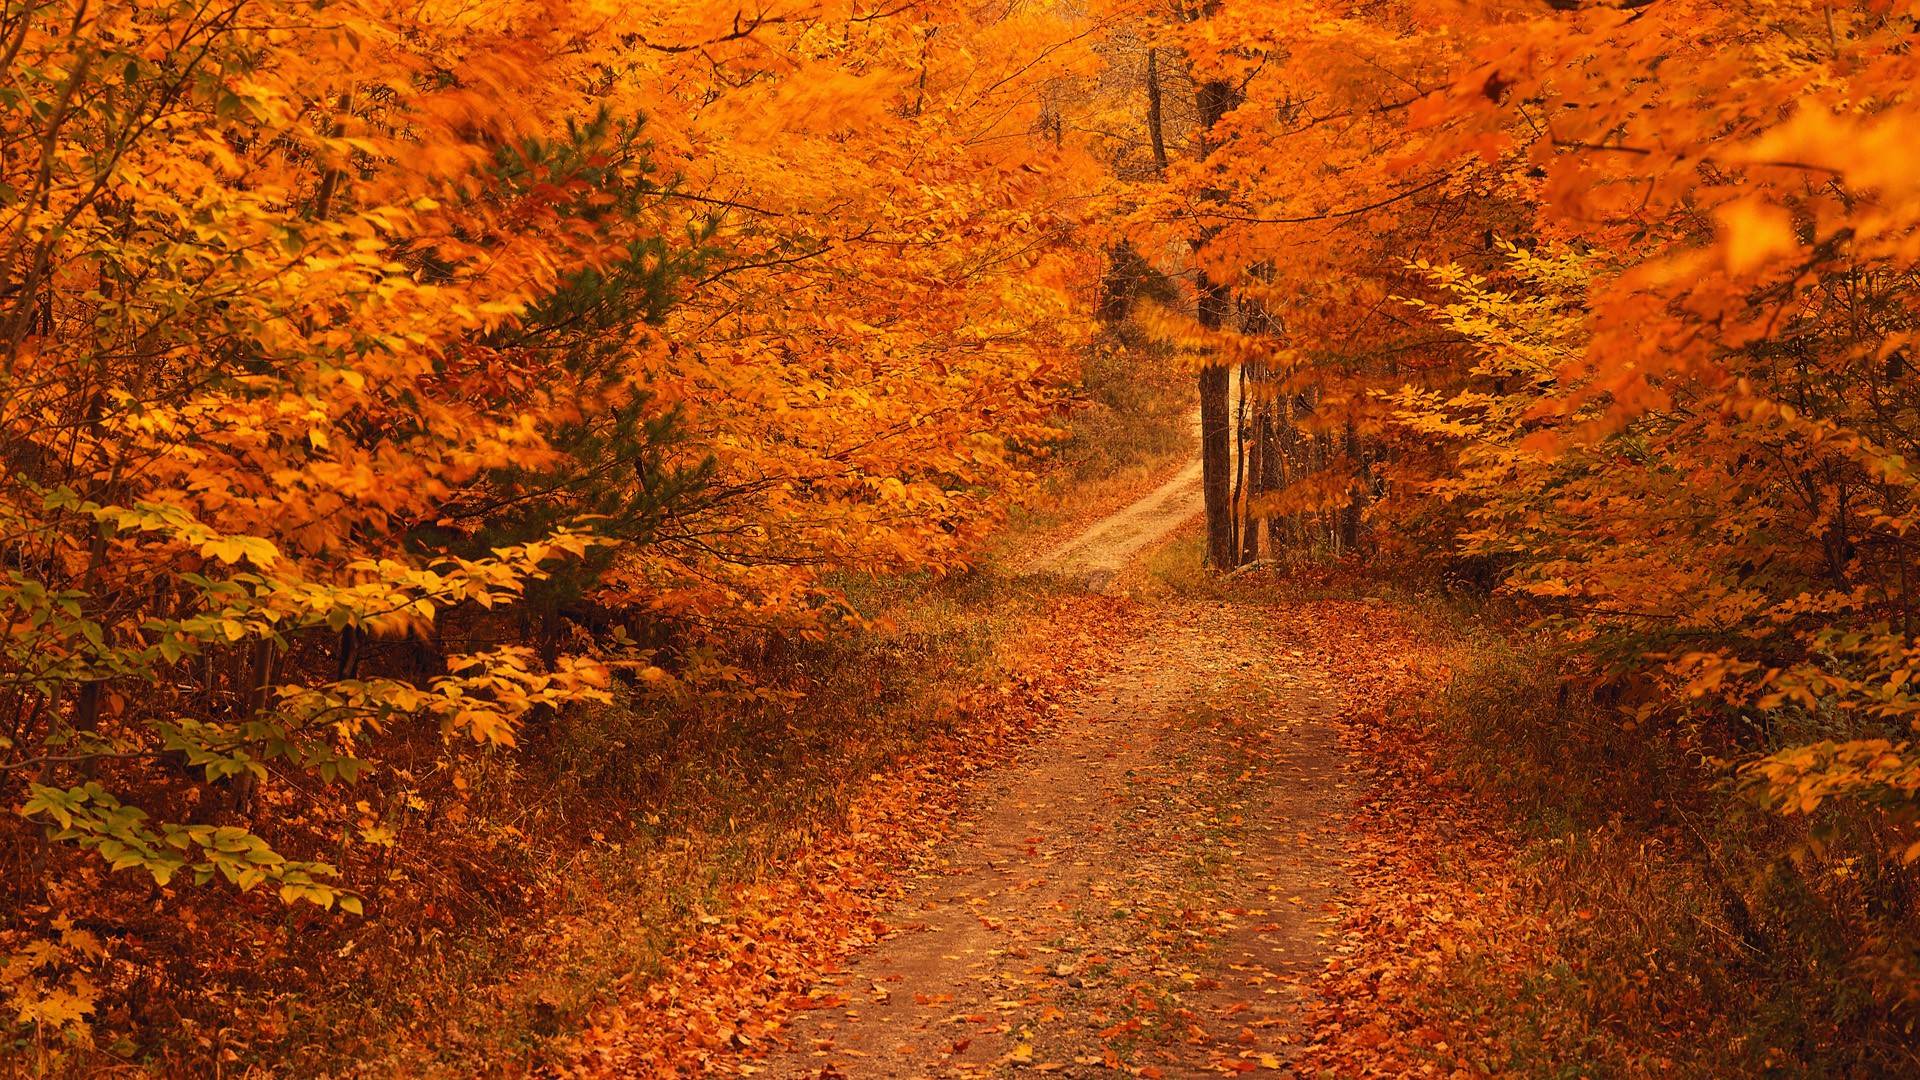 ð¥ Download Autumn Image Wallpaper Photos by @ryantaylor | Wallpaper